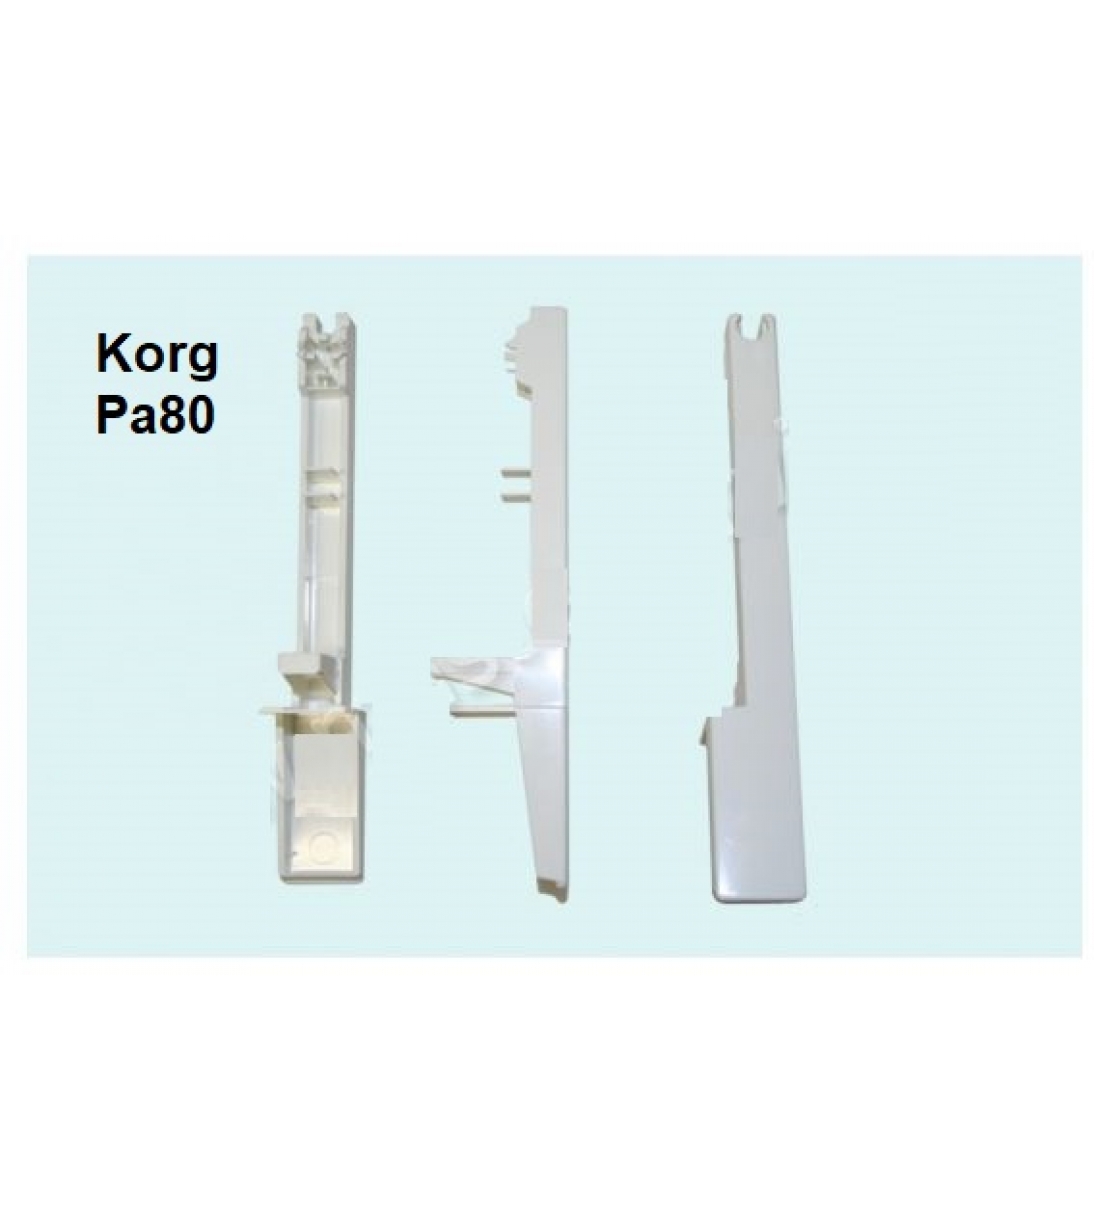 Tasto bianco per Korg PA80 (nell'ordine inserire il nota che si vuole acquistare)